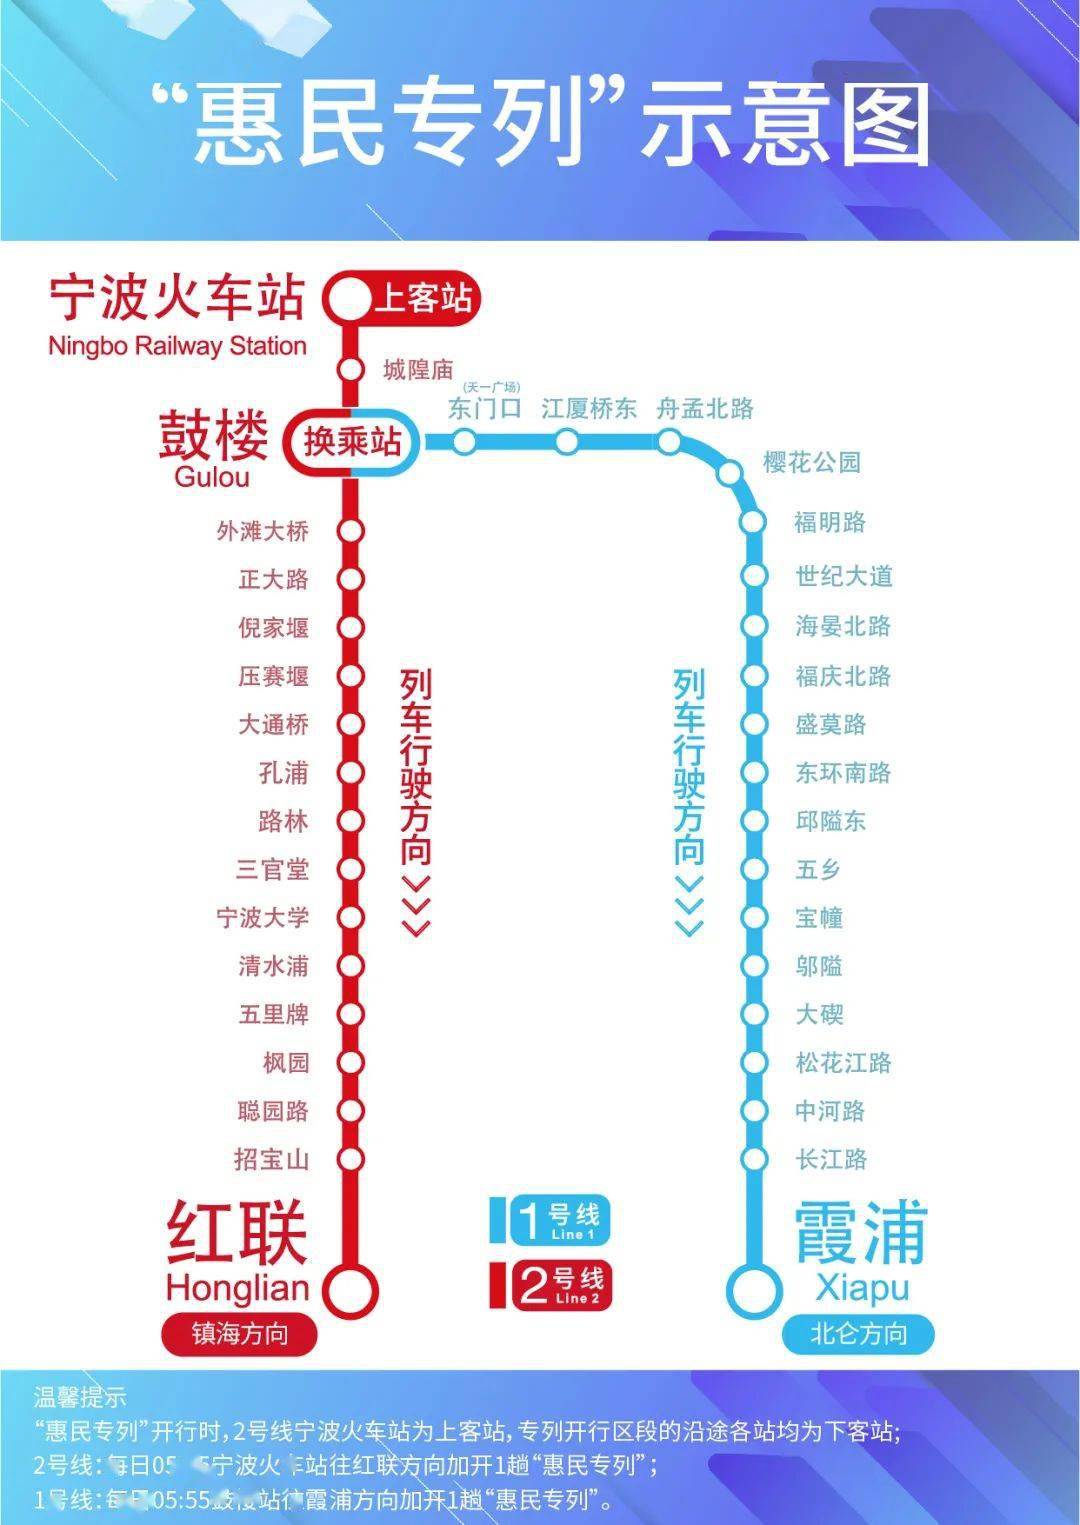 温馨提示惠民专列开行时,除地铁2号线宁波火车站可进站乘车外,专列